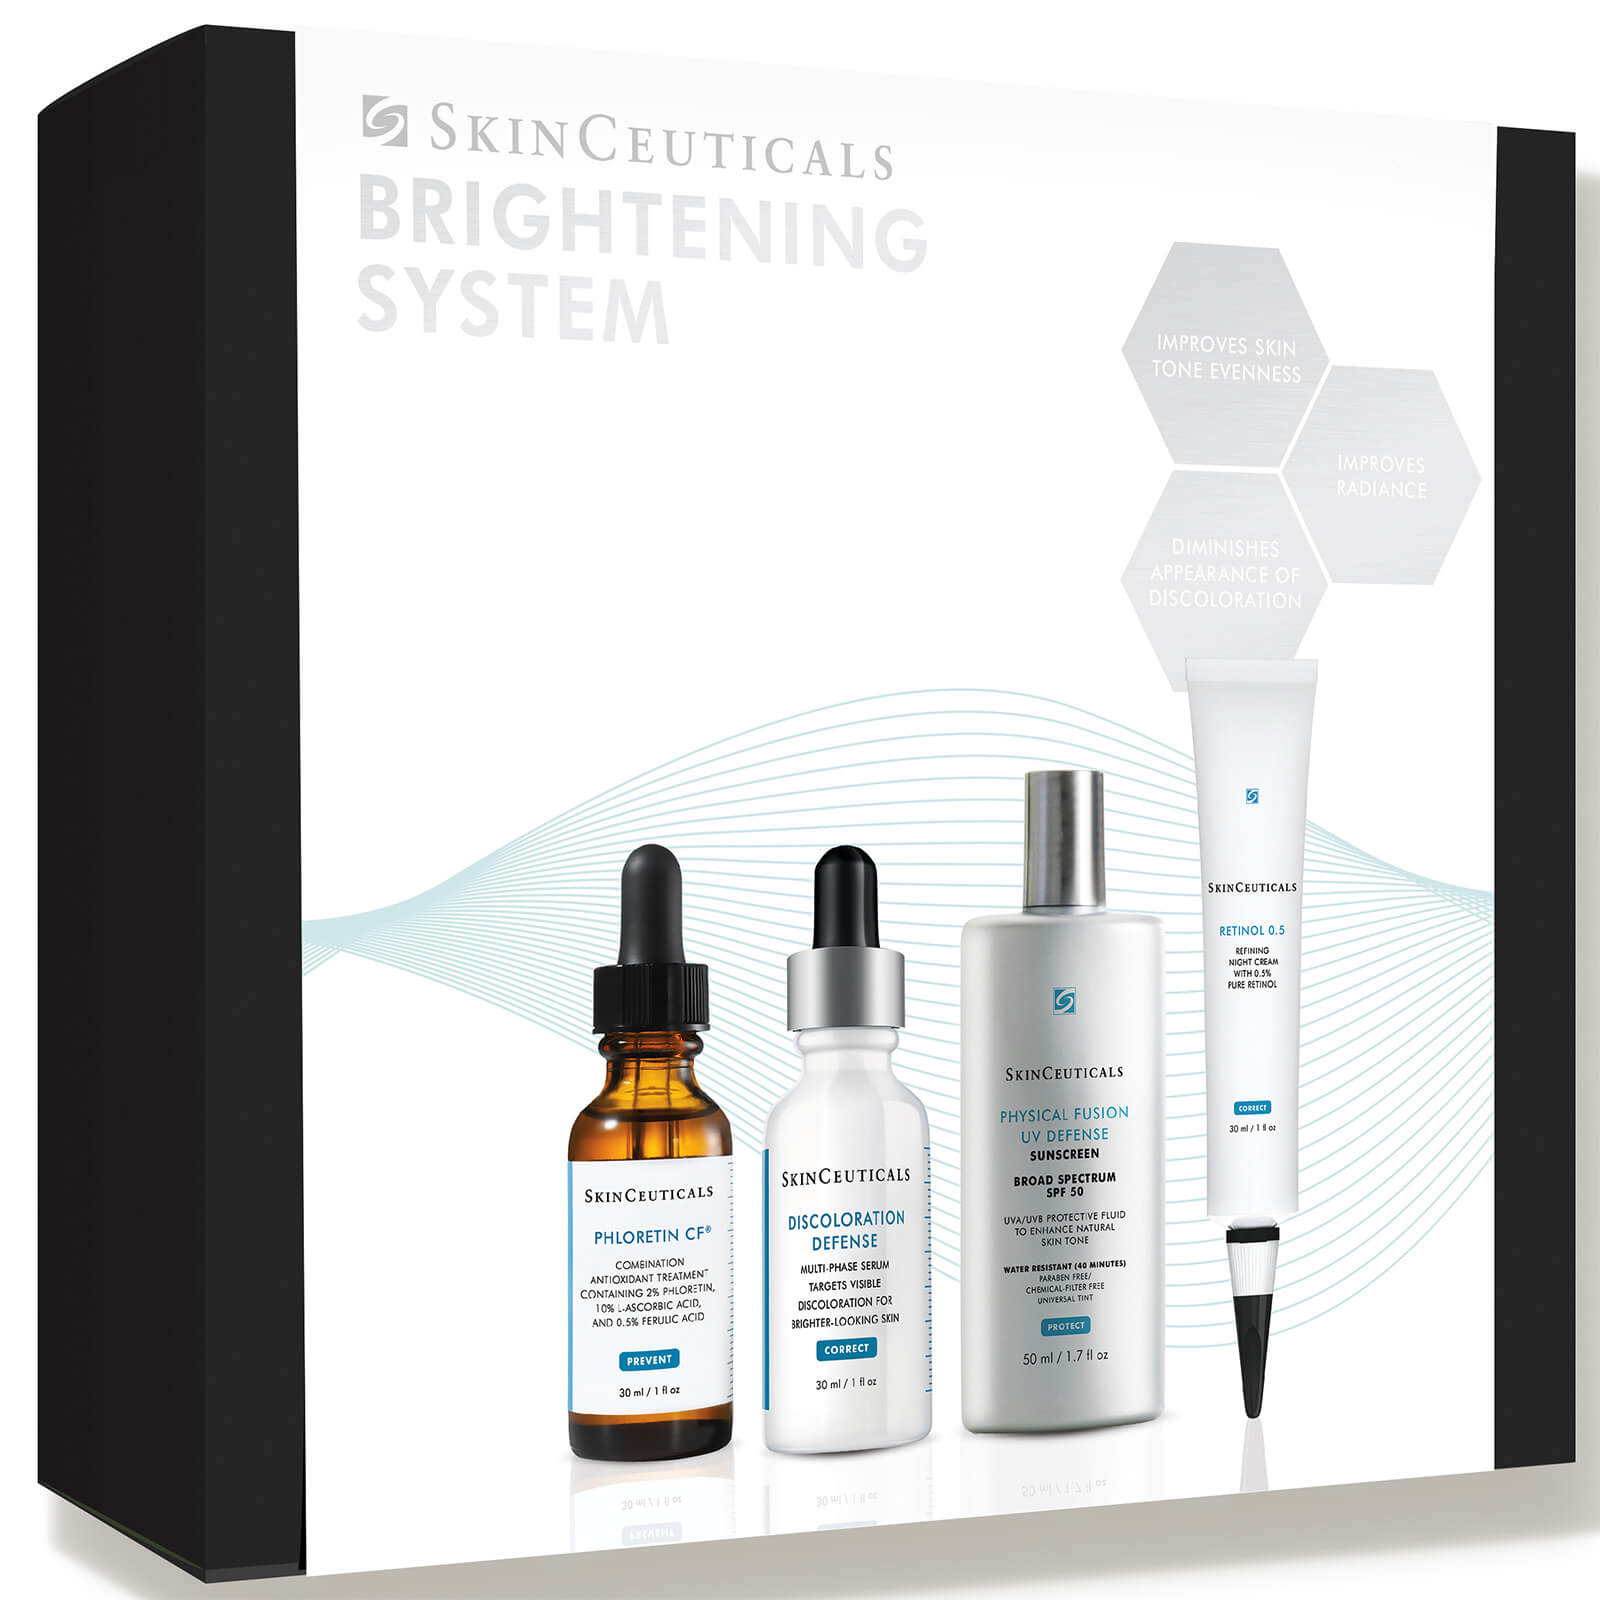 Skinceuticals Brightening Skin System (worth $387.00)